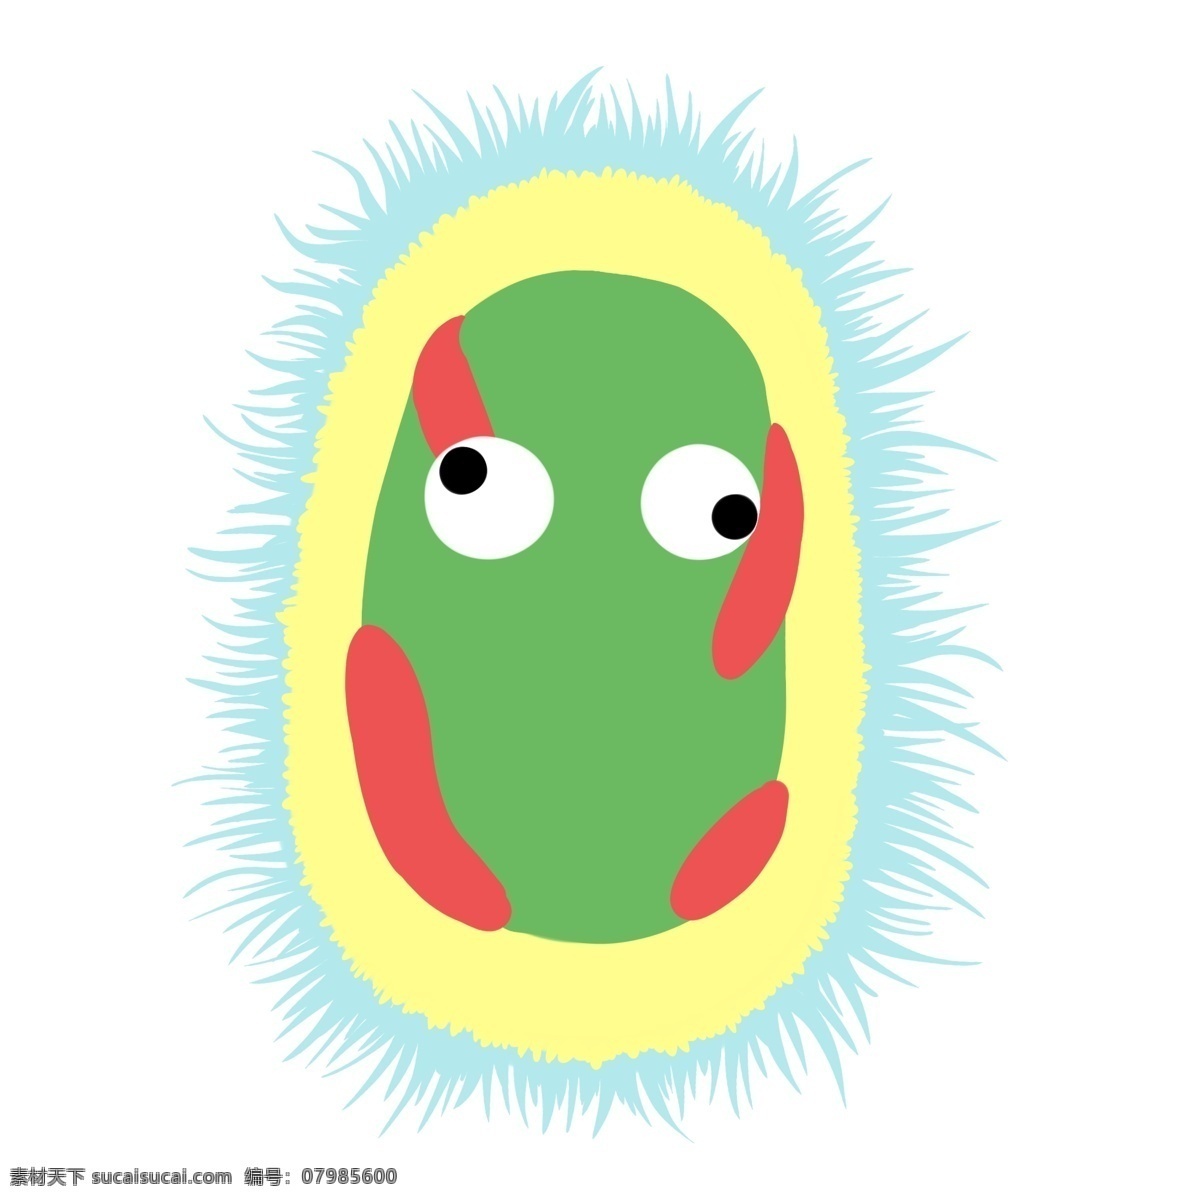 长毛 有害 细菌 插画 蓝色的绒毛 卡通插画 细菌插画 病菌插画 病菌细菌 有害细菌 绿色的细菌